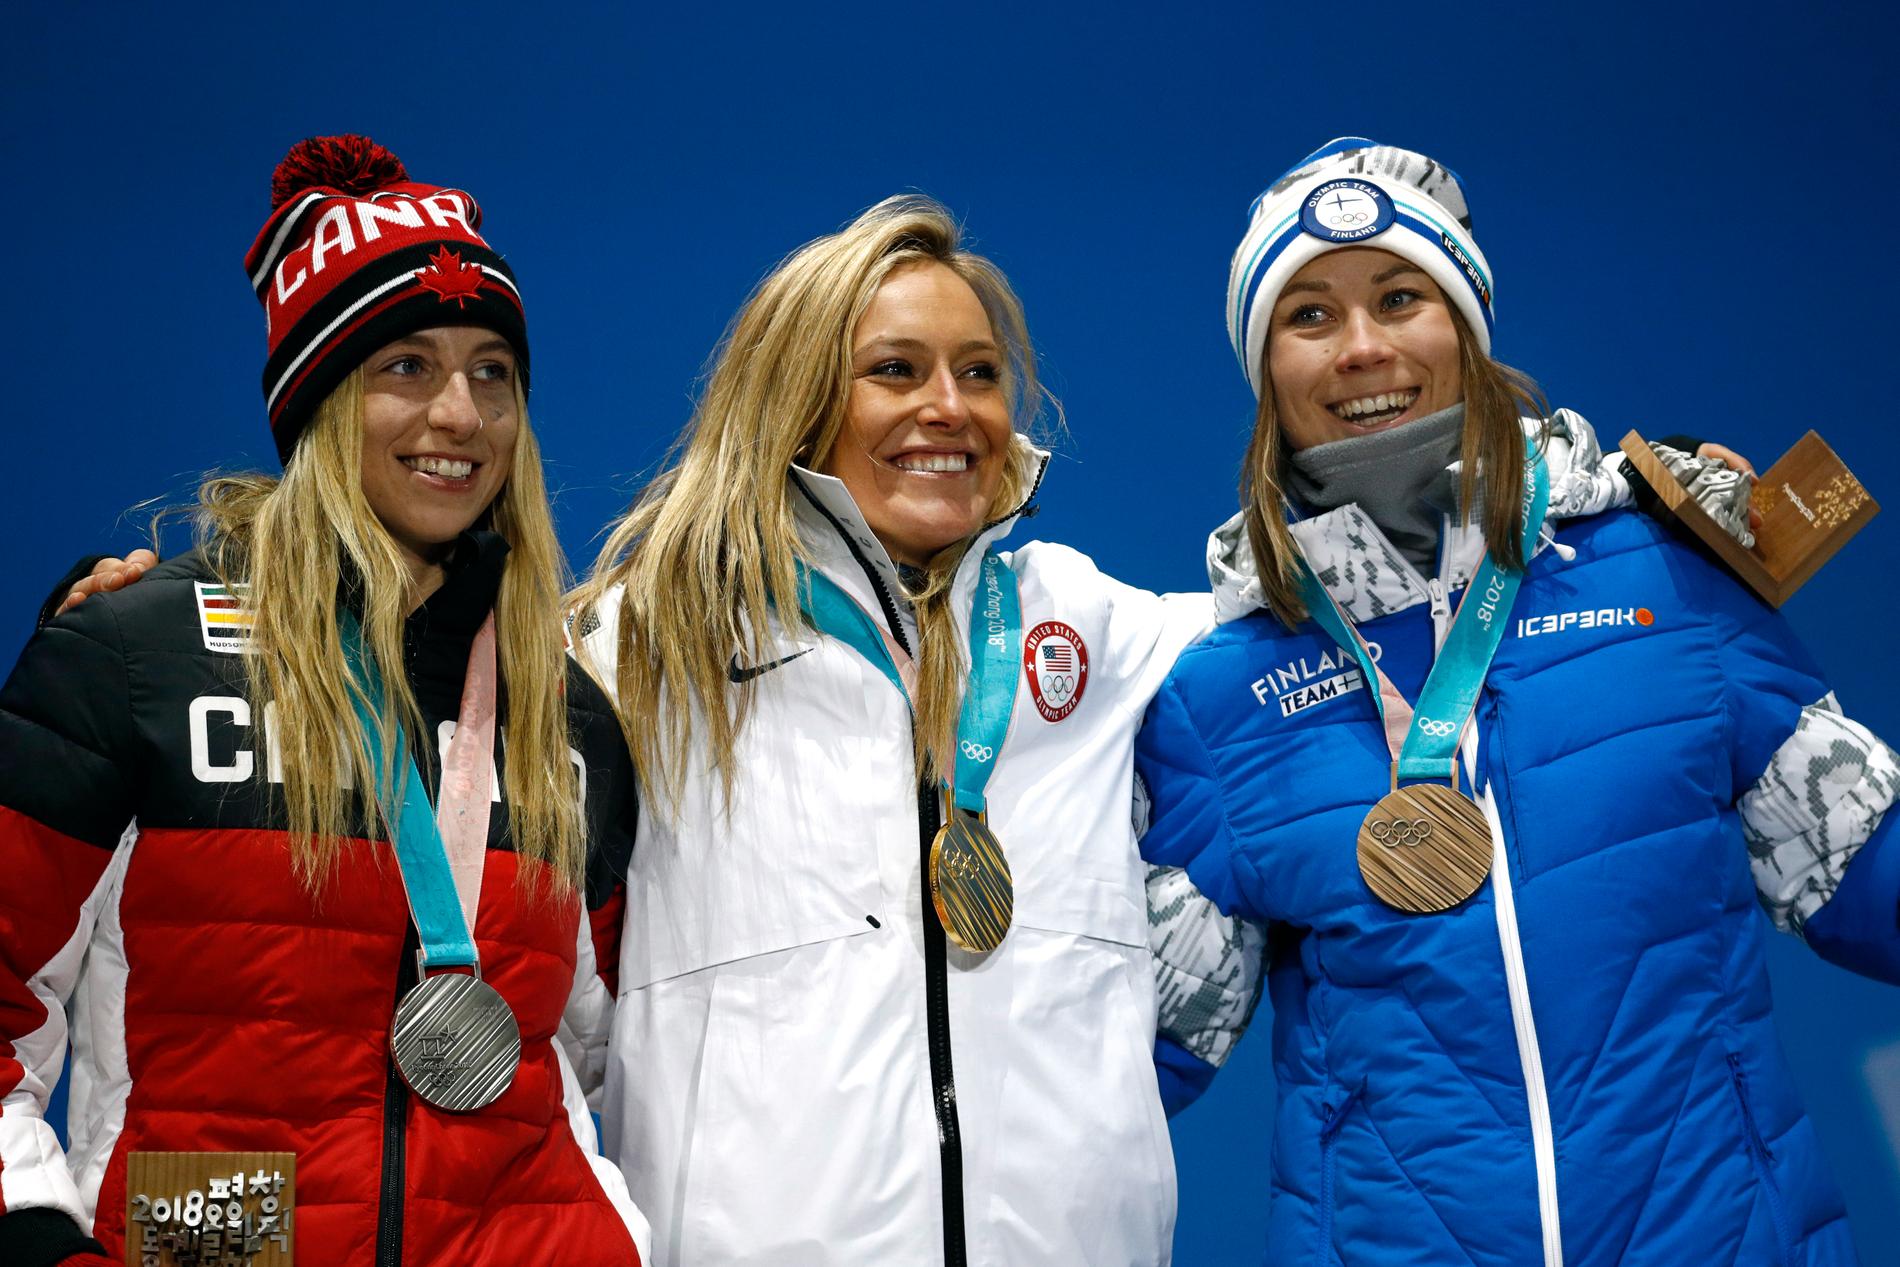 Jamie Anderson, USA, vann OS-guld i snowboardens slopstyle. I big air får hon en ny chans till medalj.